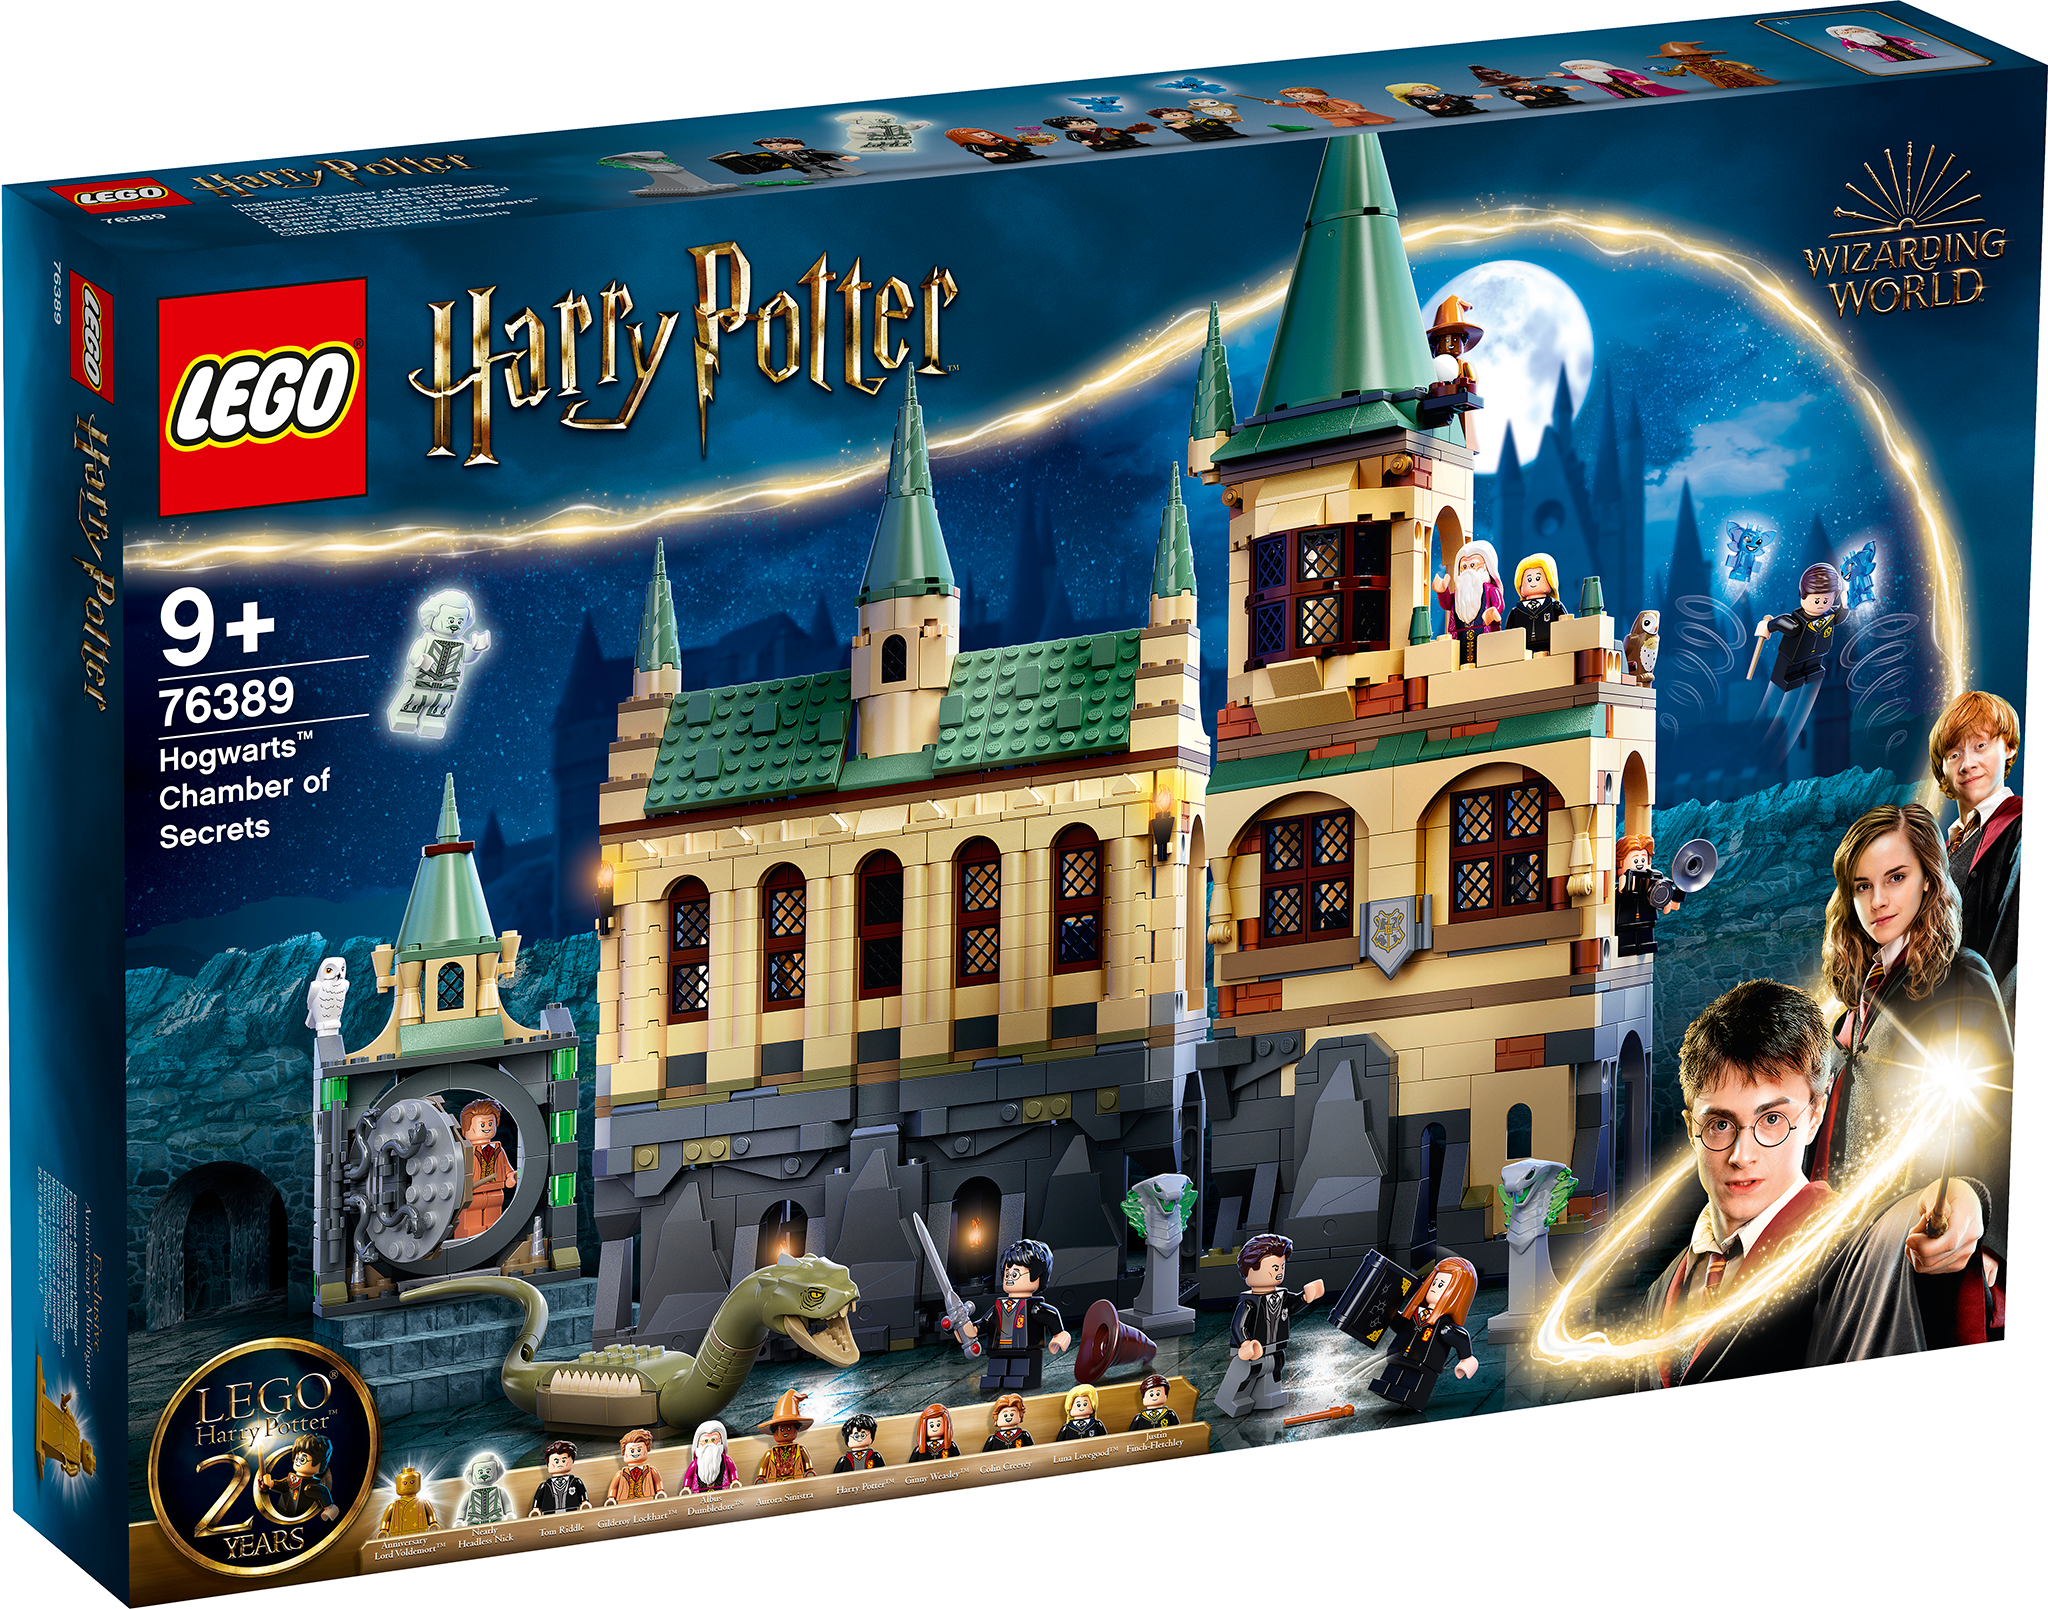 Lego Harry Potter: Idade 1-4 anos - pc em Promoção na Americanas